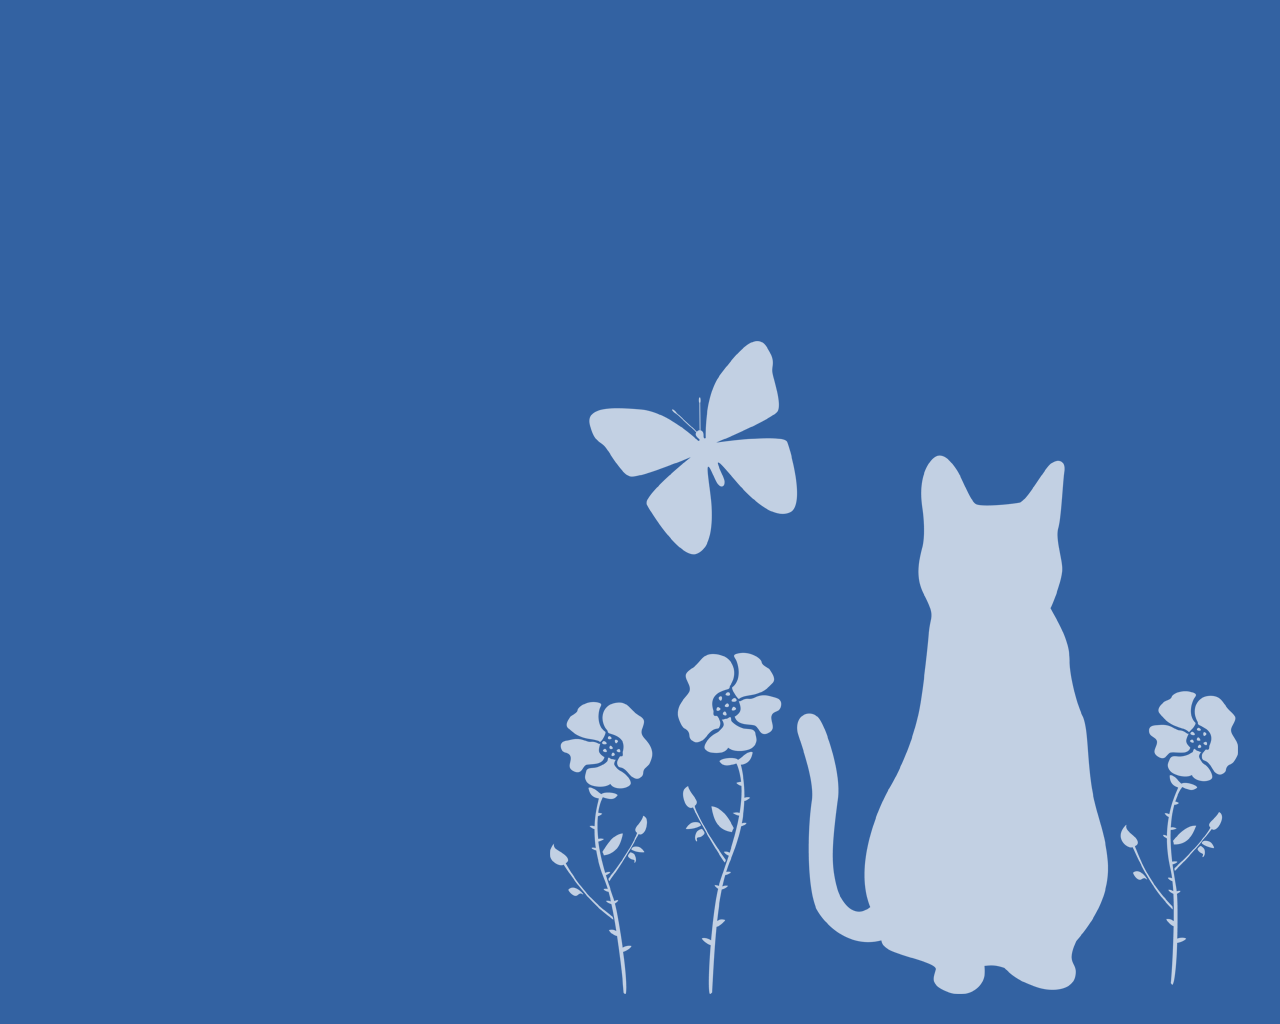 猫壁紙 猫と蝶と花と 白シルエット1280 1024 商用利用可 無料